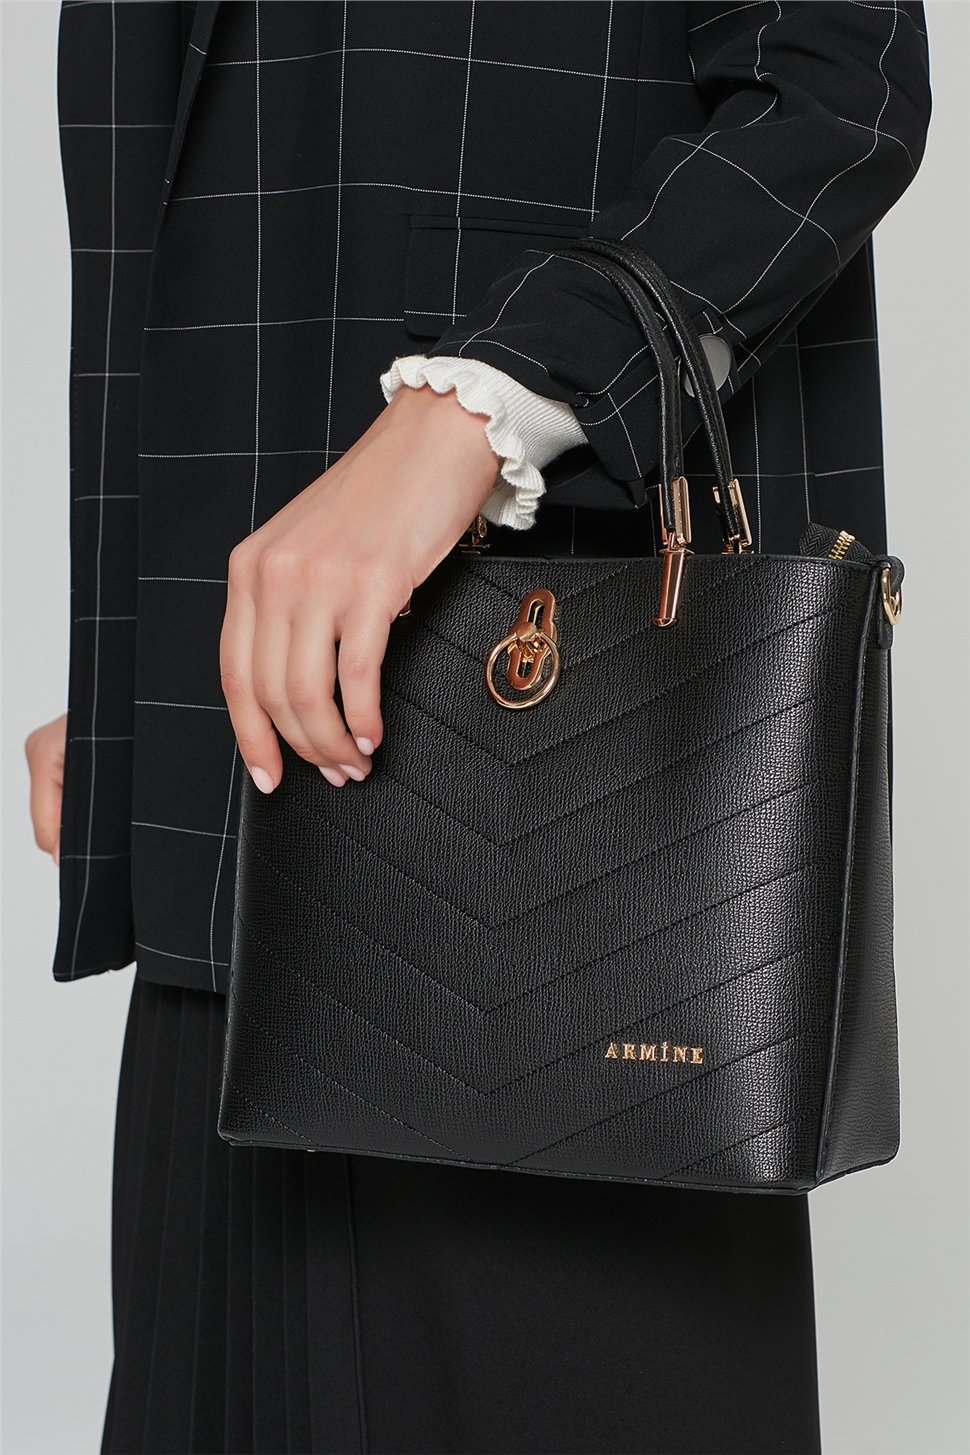 Armine Klasik Çanta 20Ka1517 Siyah - Armine Kadın Giyim